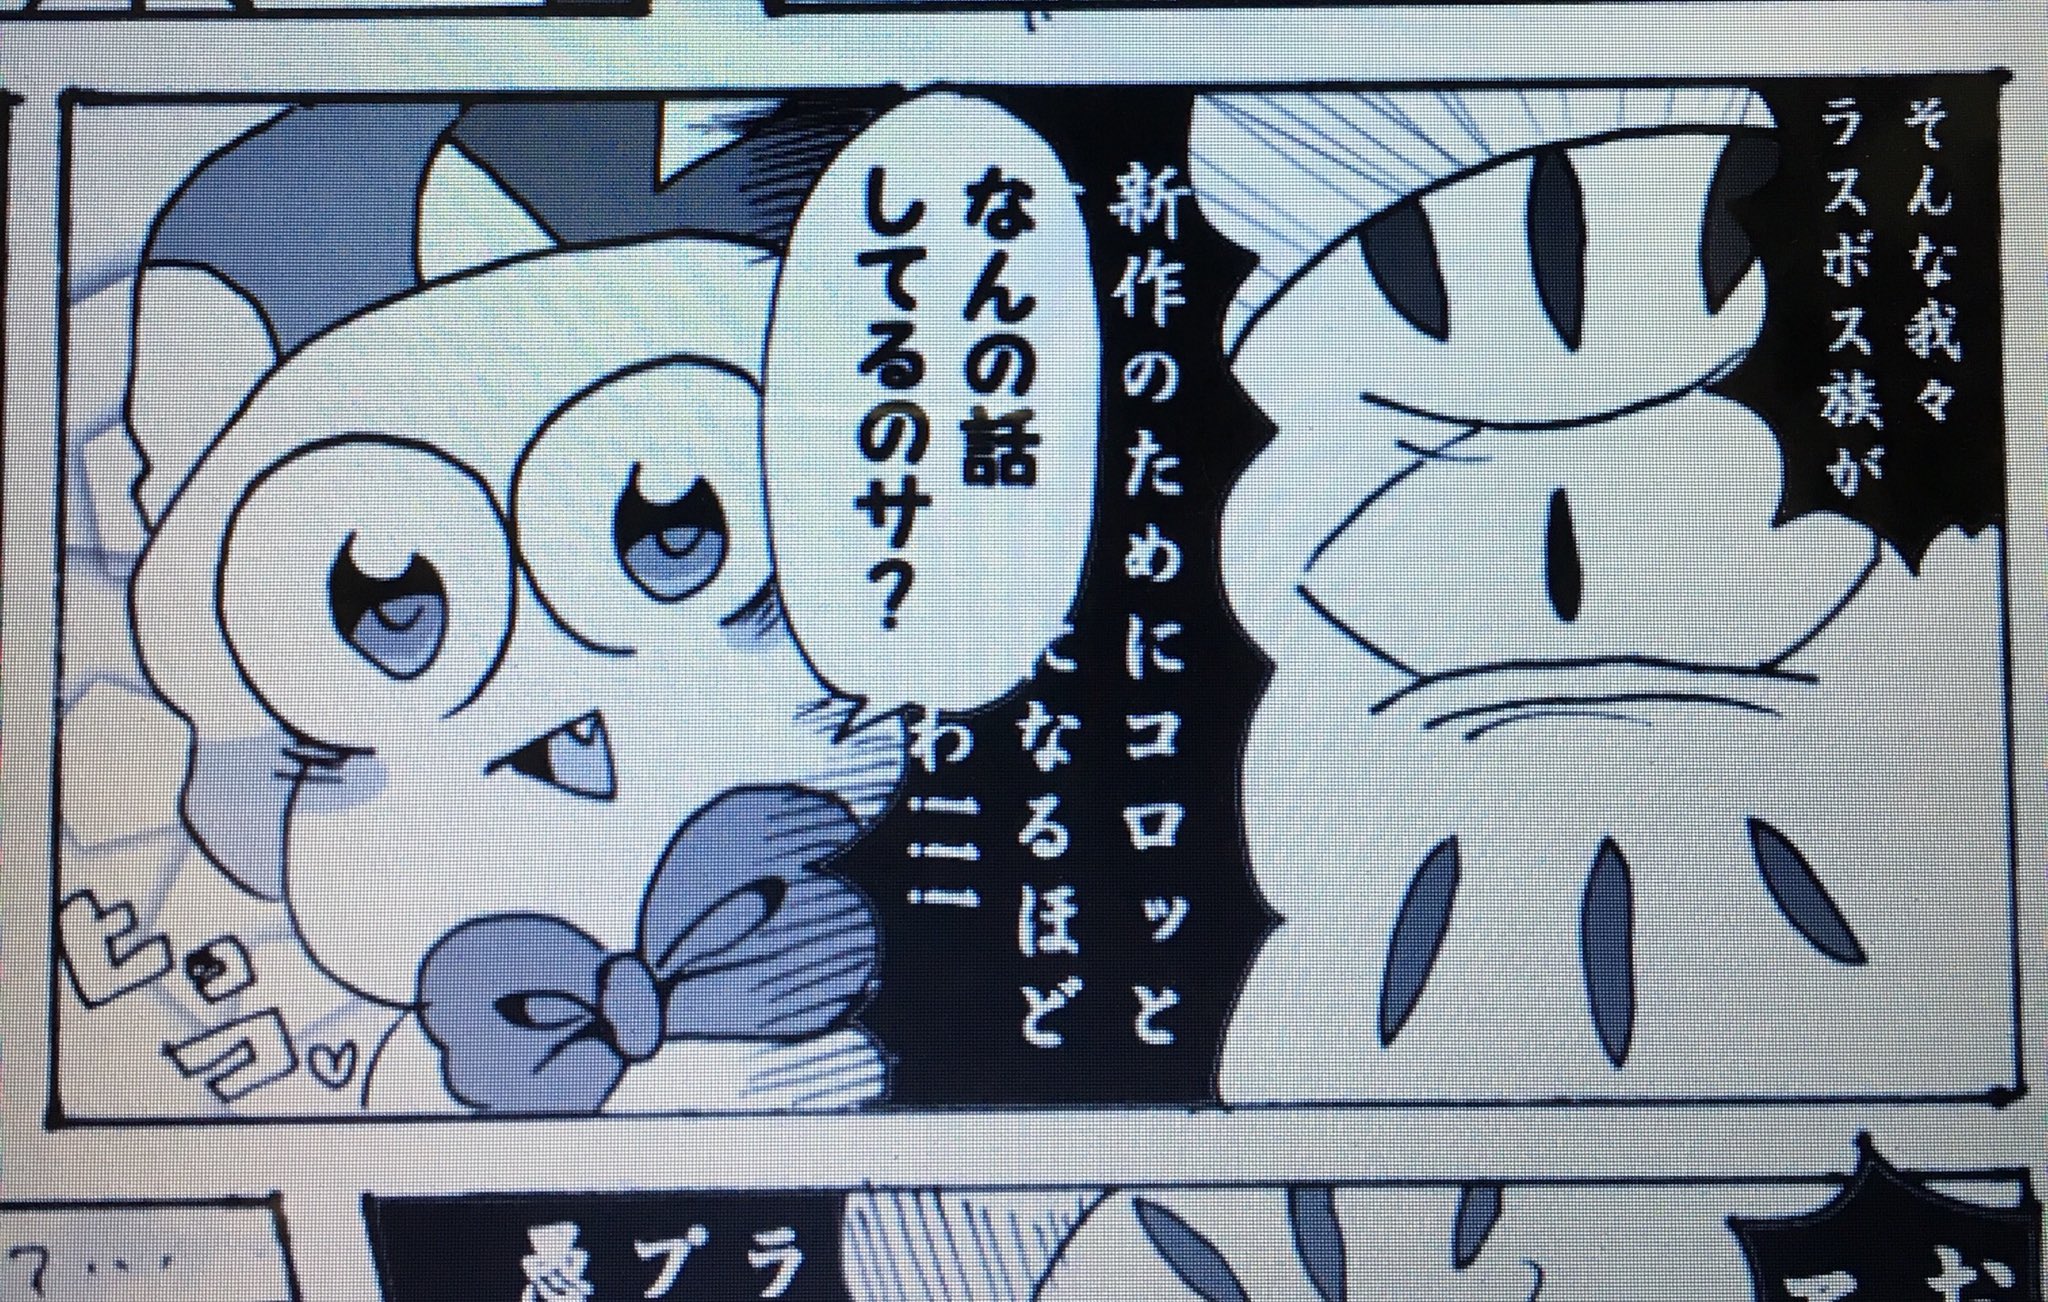 Kagamiyo U Tvitteri カービィ3の祝い漫画描きたかったのに完全にゼロ様可哀想な漫画になってる とりあえずこのマルクめちゃくちゃ可愛く描けた